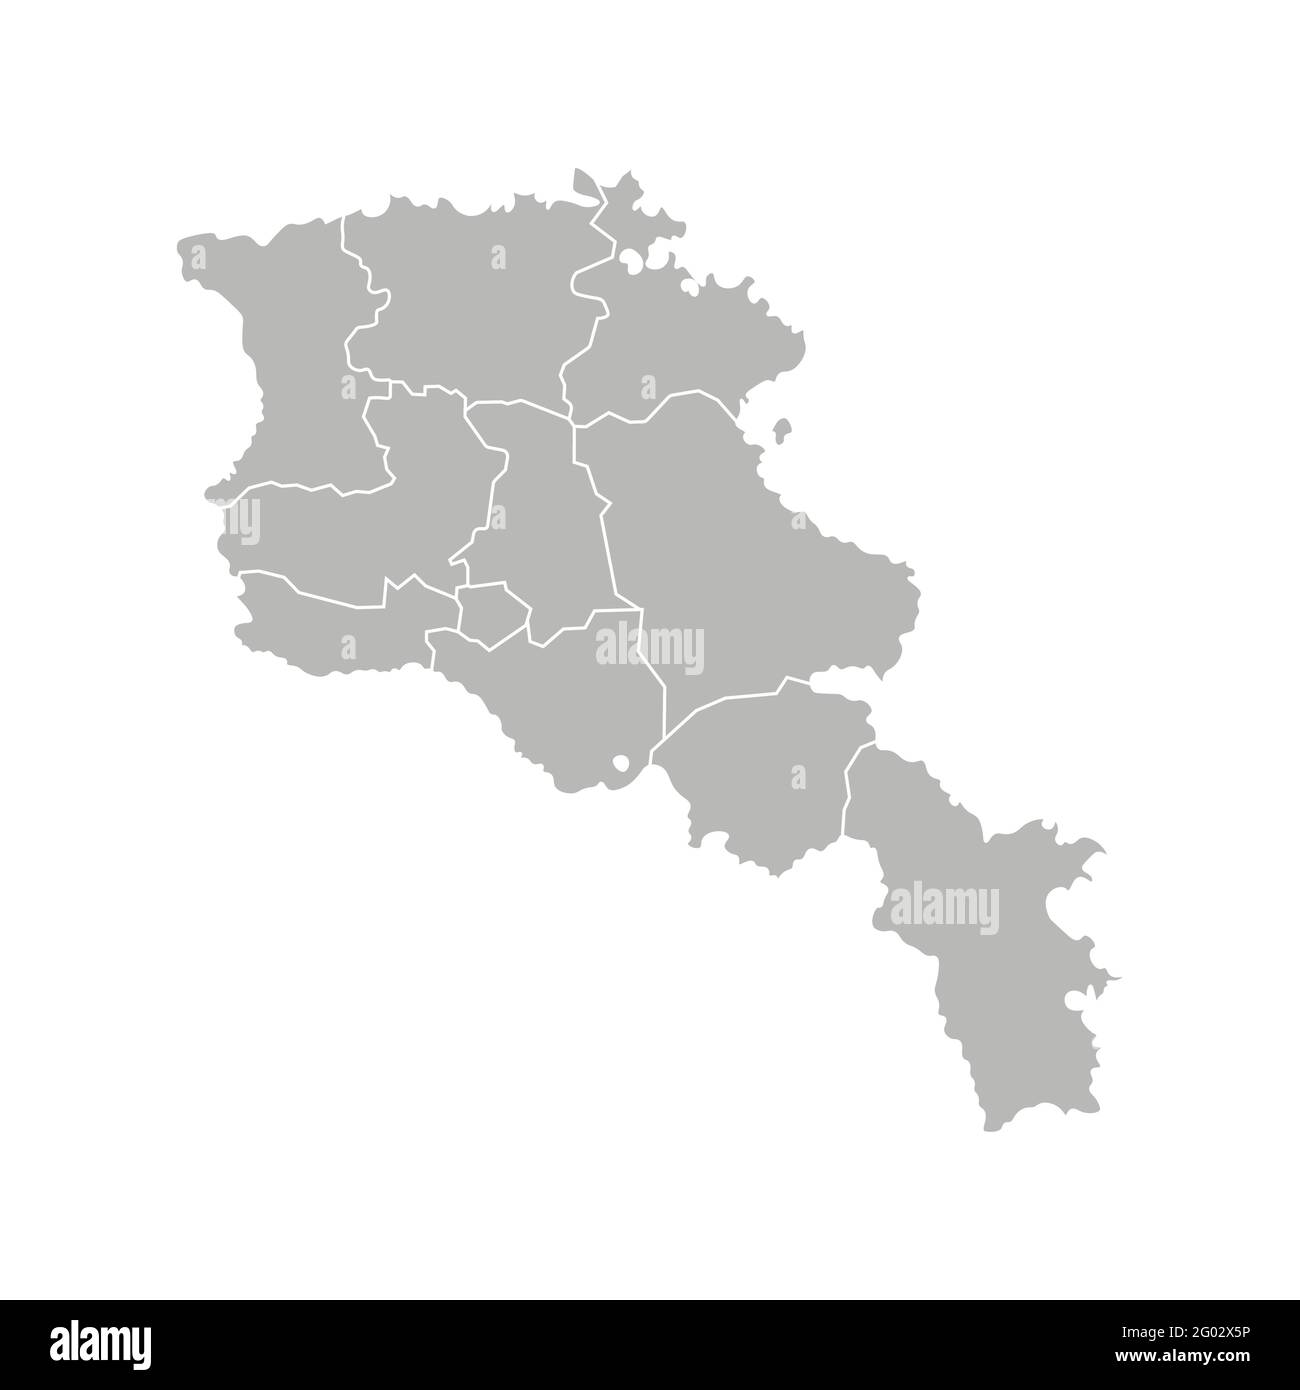 Ilustración aislada vectorial del mapa administrativo simplificado de Armenia. Fronteras de las provincias (regiones). Siluetas grises. Contorno blanco. Ilustración del Vector